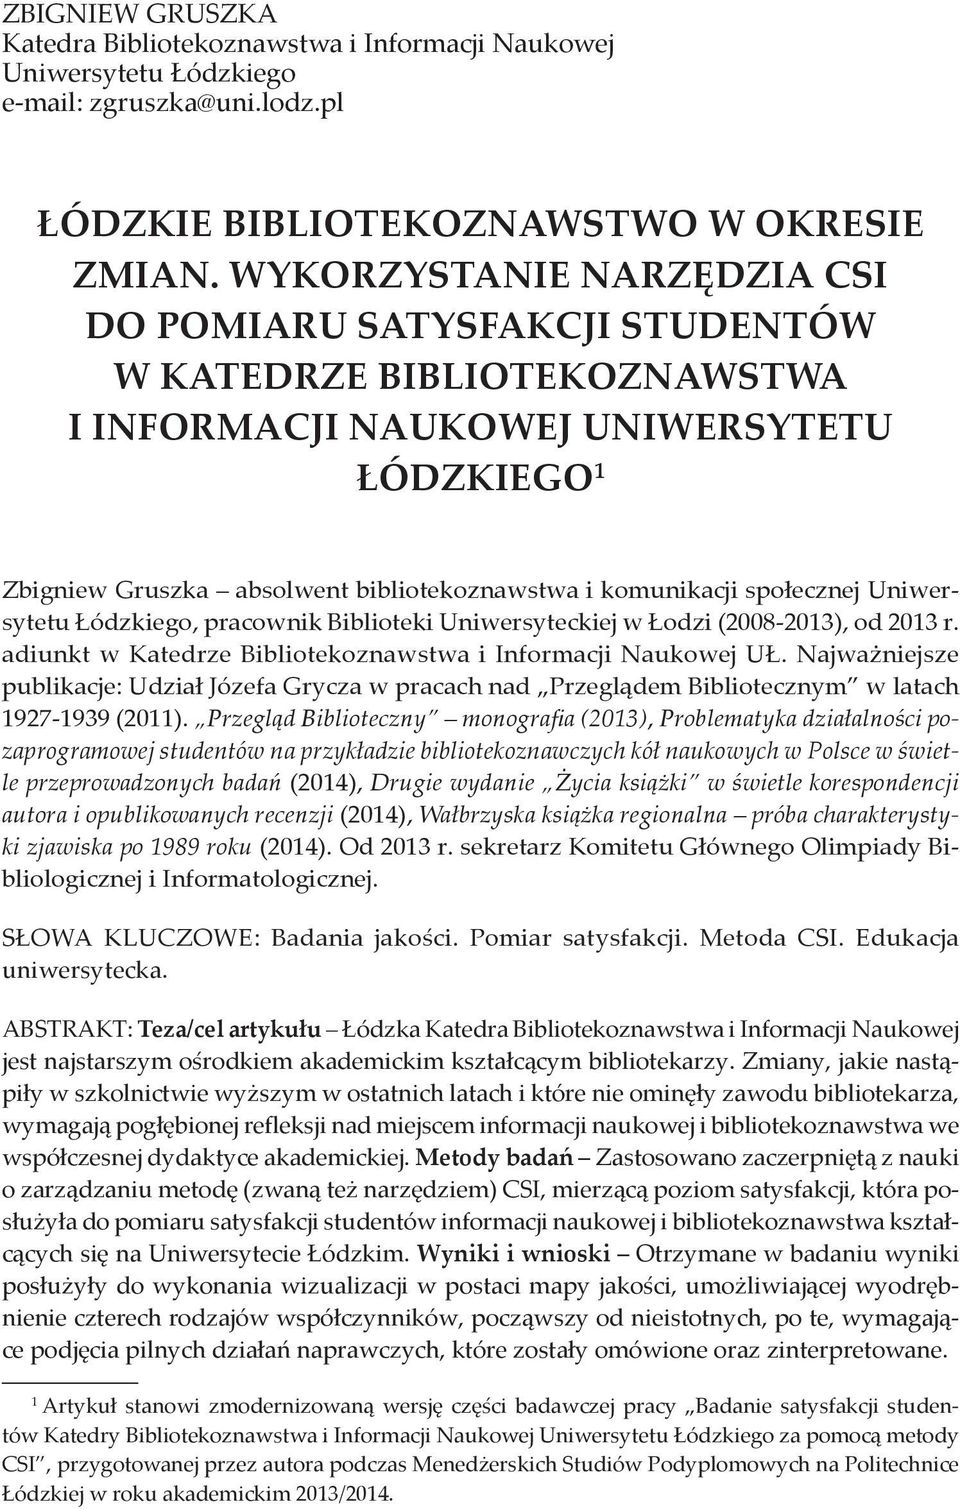 społecznej Uniwersytetu Łódzkiego, pracownik Biblioteki Uniwersyteckiej w Łodzi (2008-2013), od 2013 r. adiunkt w Katedrze Bibliotekoznawstwa i Informacji Naukowej UŁ.